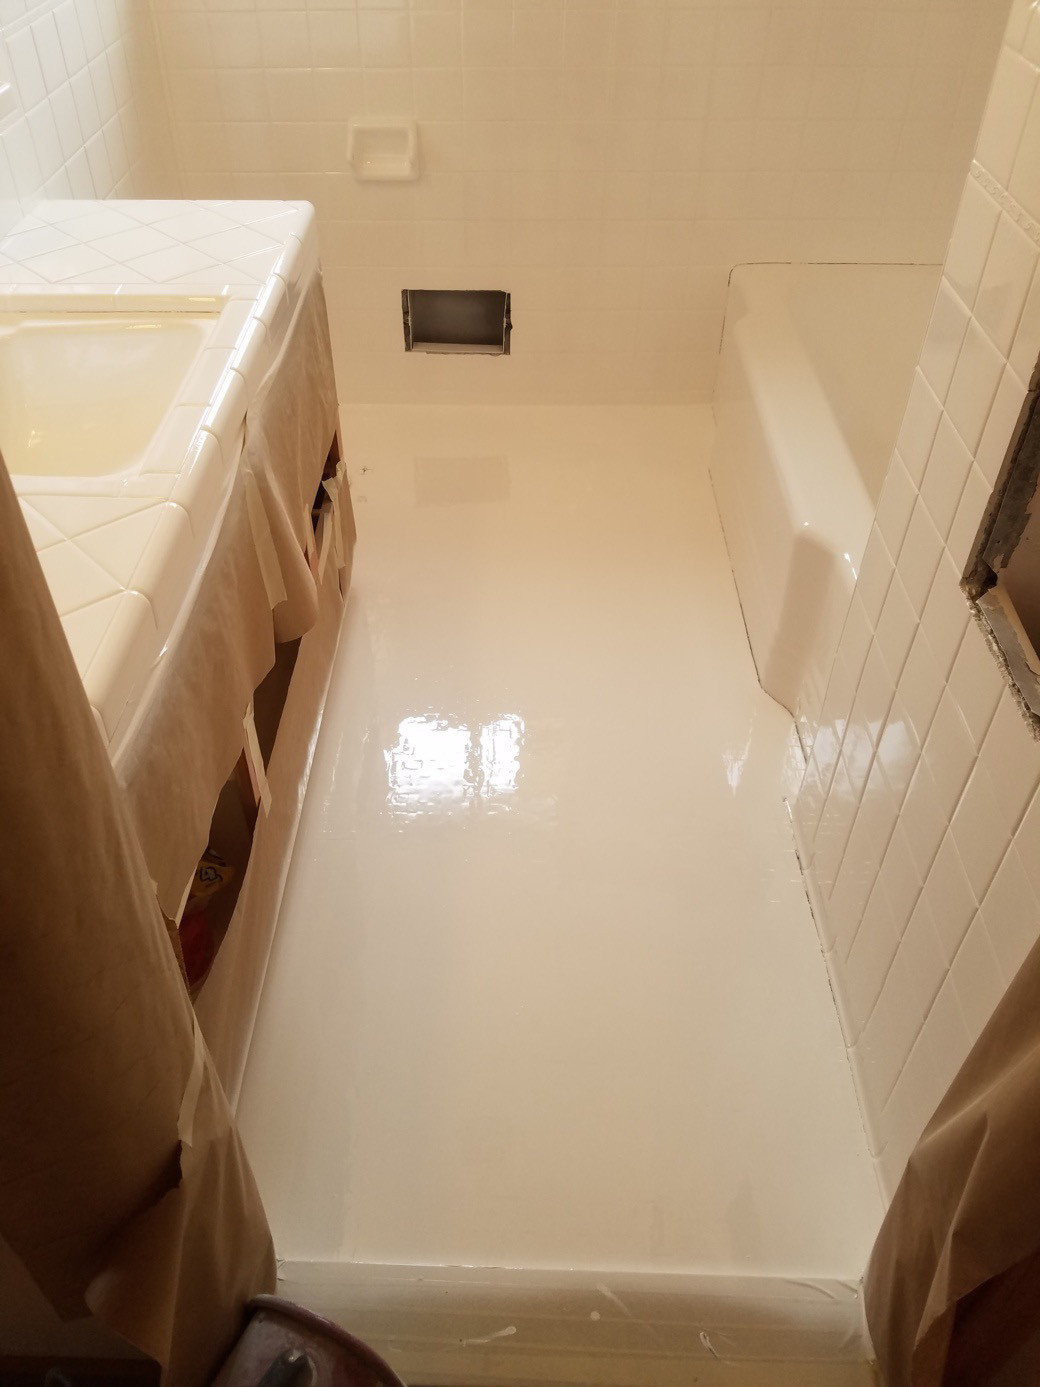 banheiro pequeno com piso de porcelanato líquido